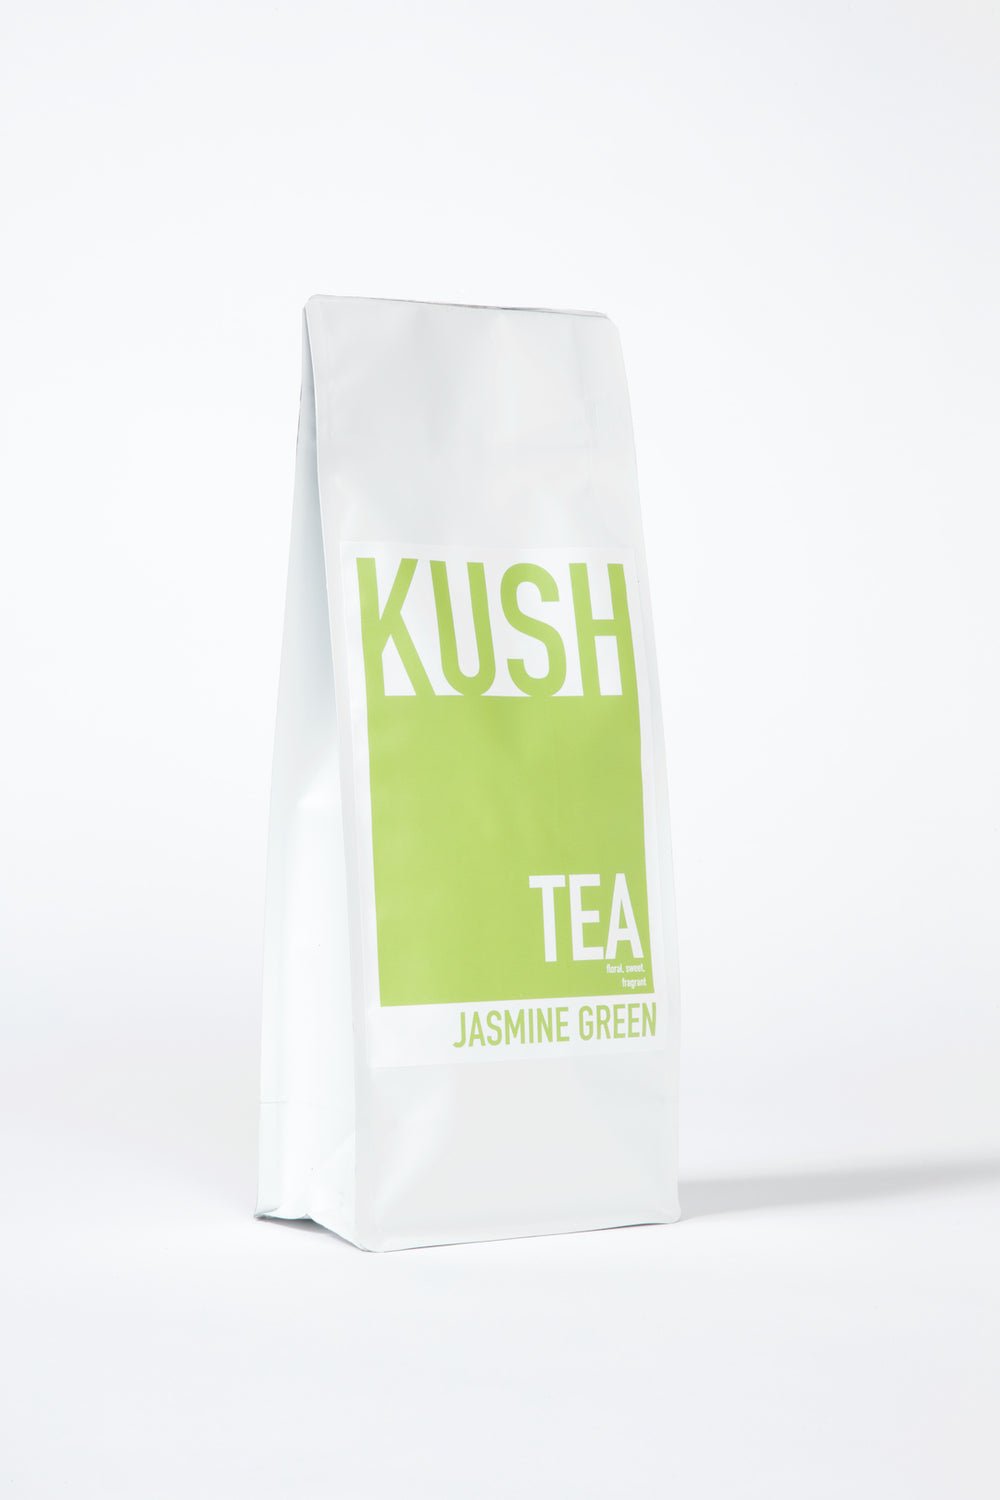 Jasmine Green Loose Leaf Tea